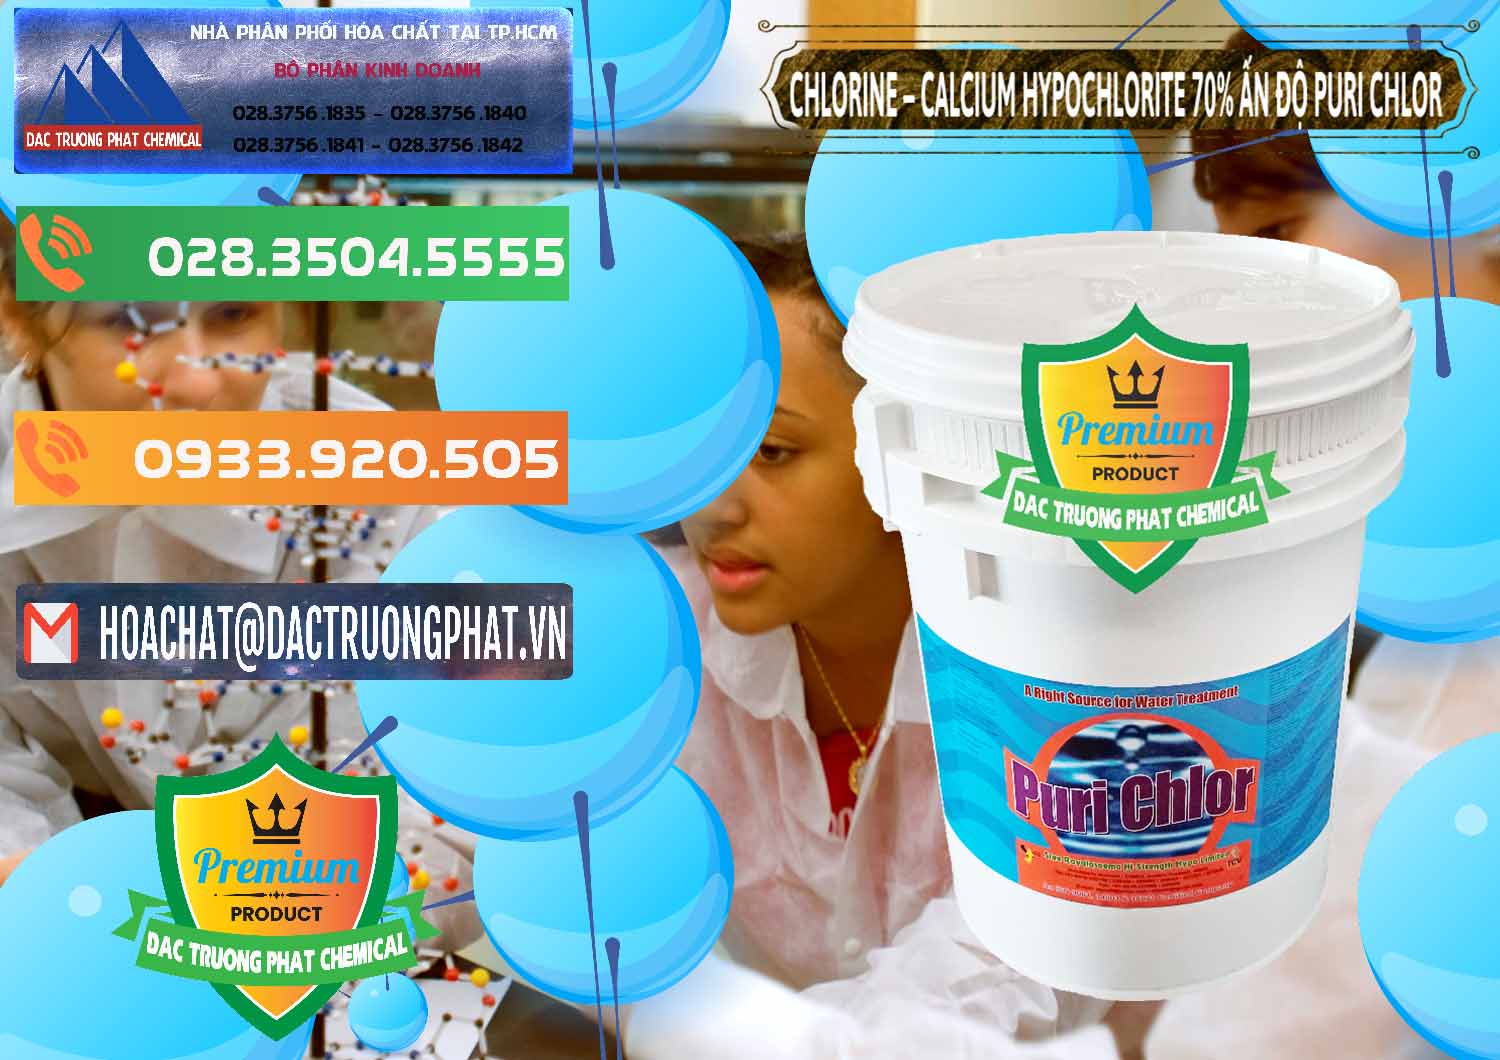 Nhà cung cấp & bán Chlorine – Clorin 70% Puri Chlo Ấn Độ India - 0123 - Nơi nhập khẩu _ phân phối hóa chất tại TP.HCM - hoachatxulynuoc.com.vn